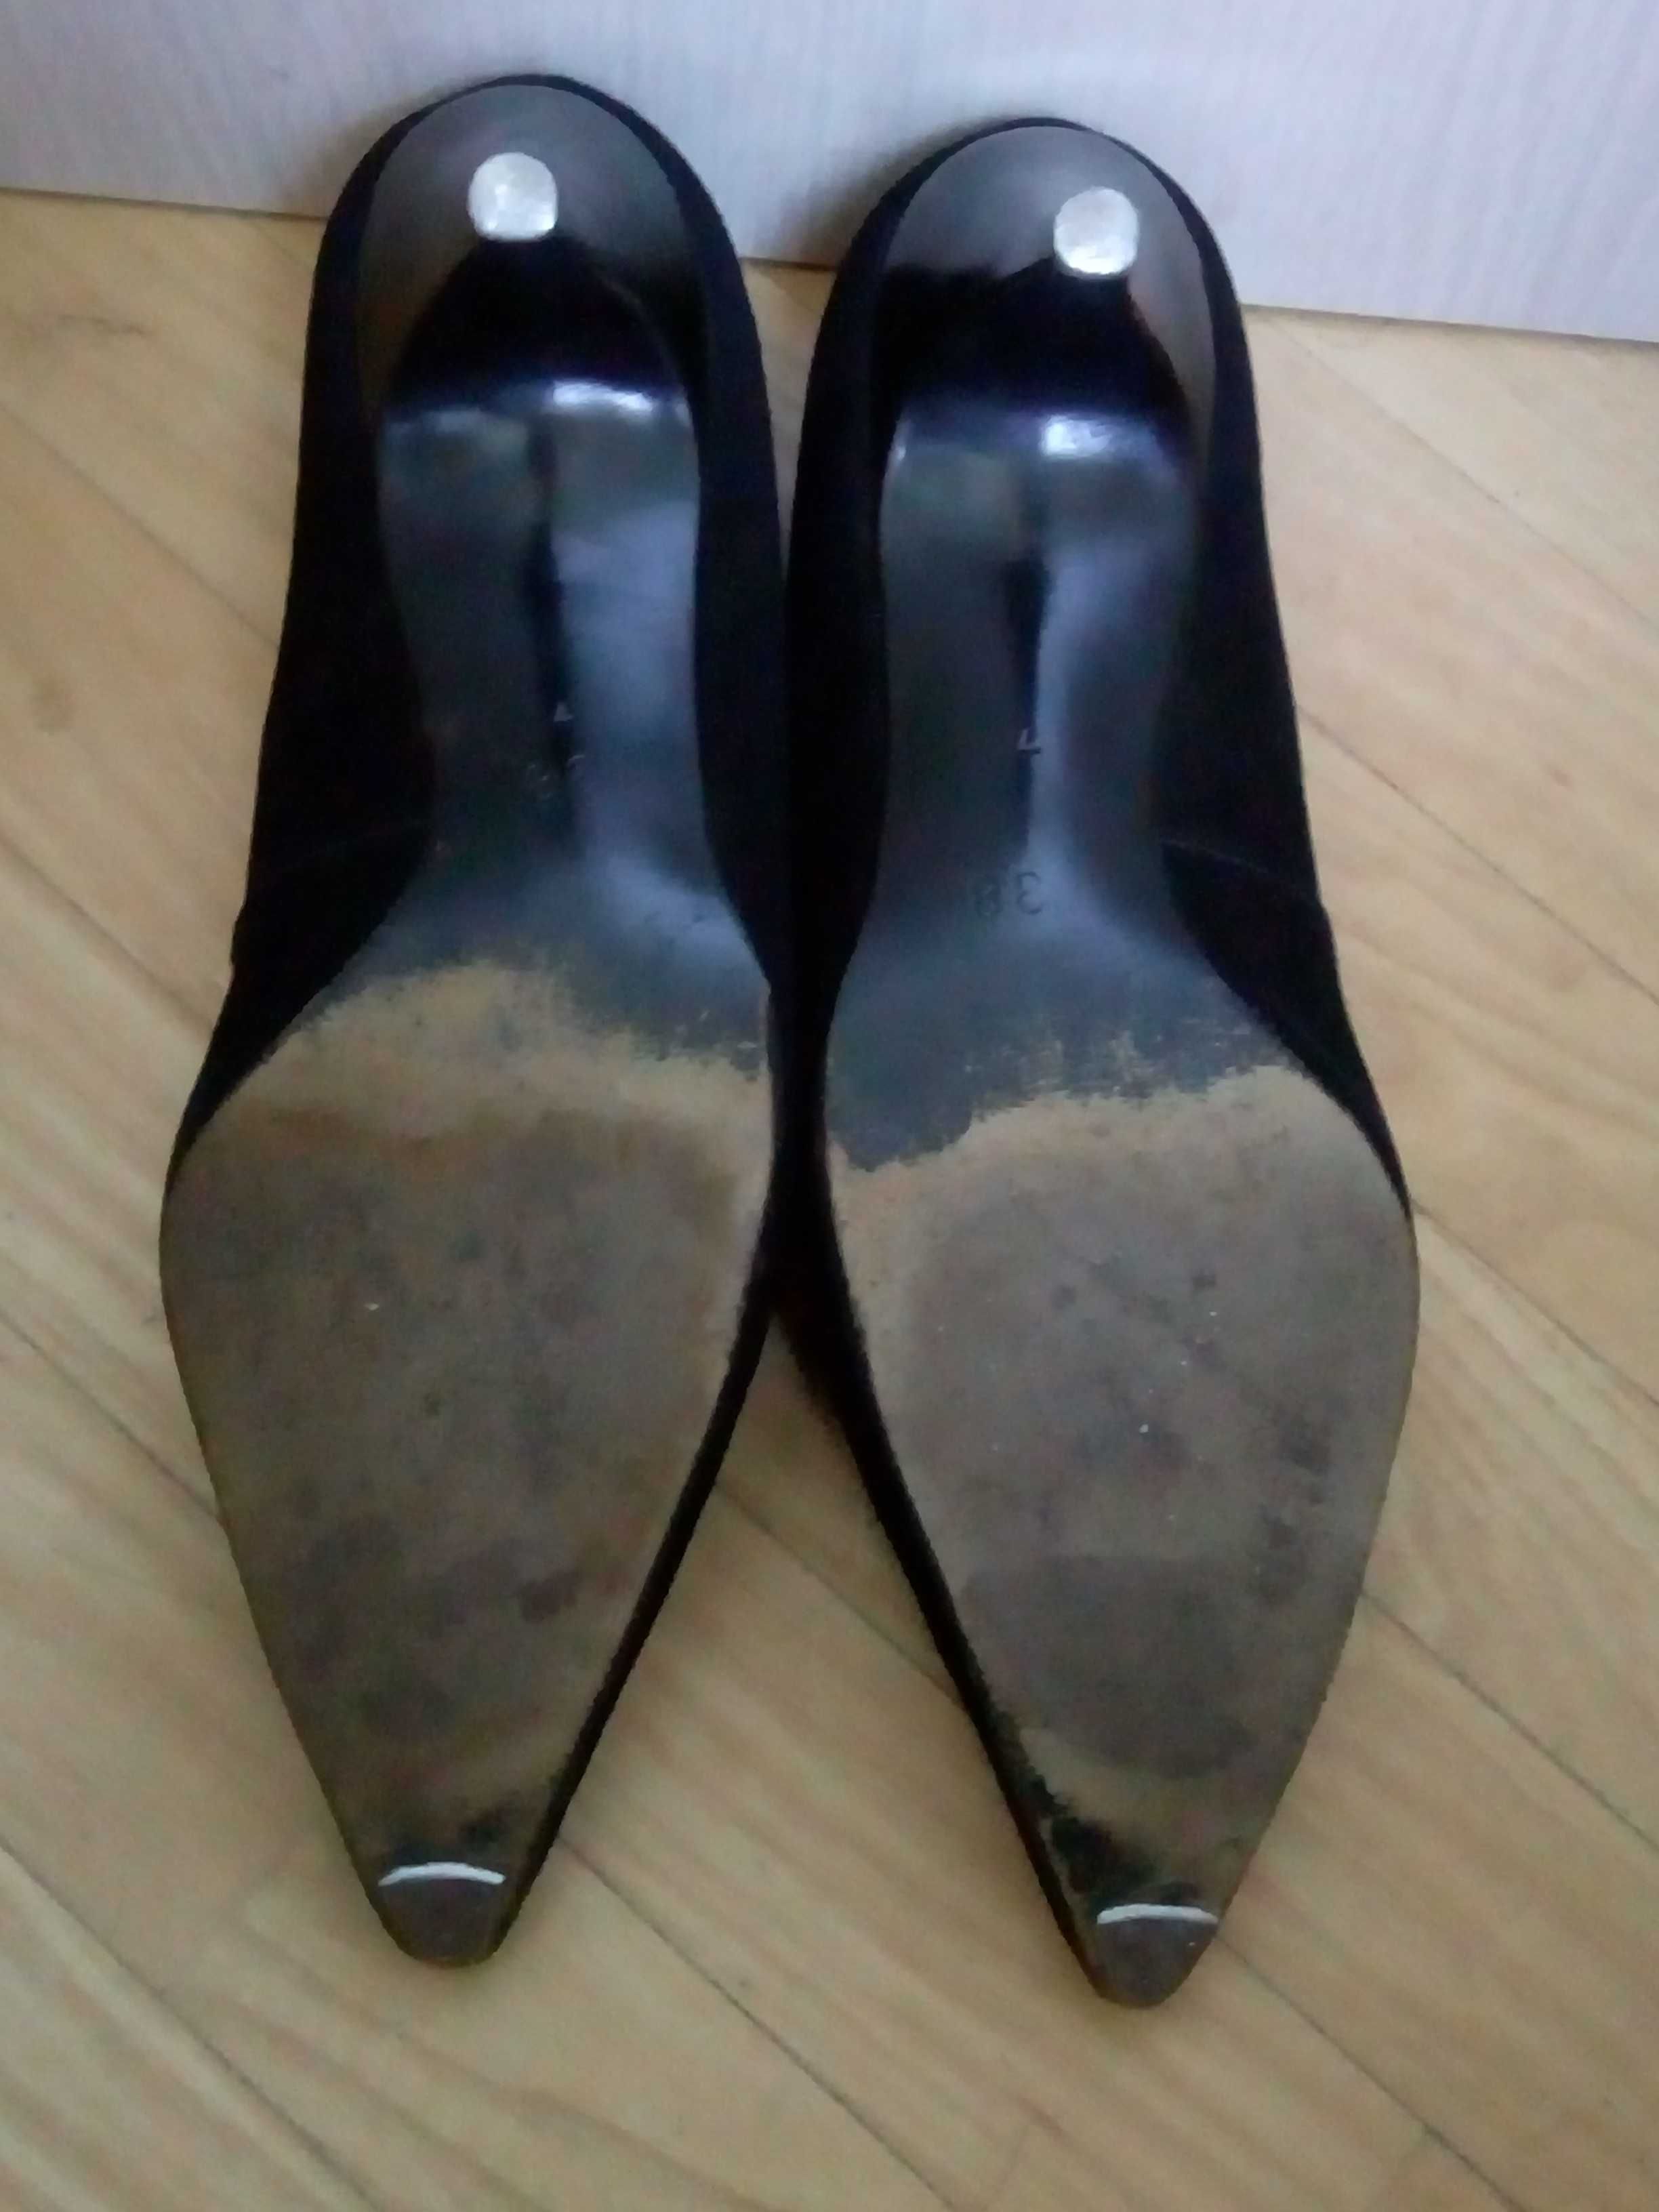 Туфли черные Kostana кожаные  натуральная замша винтажные